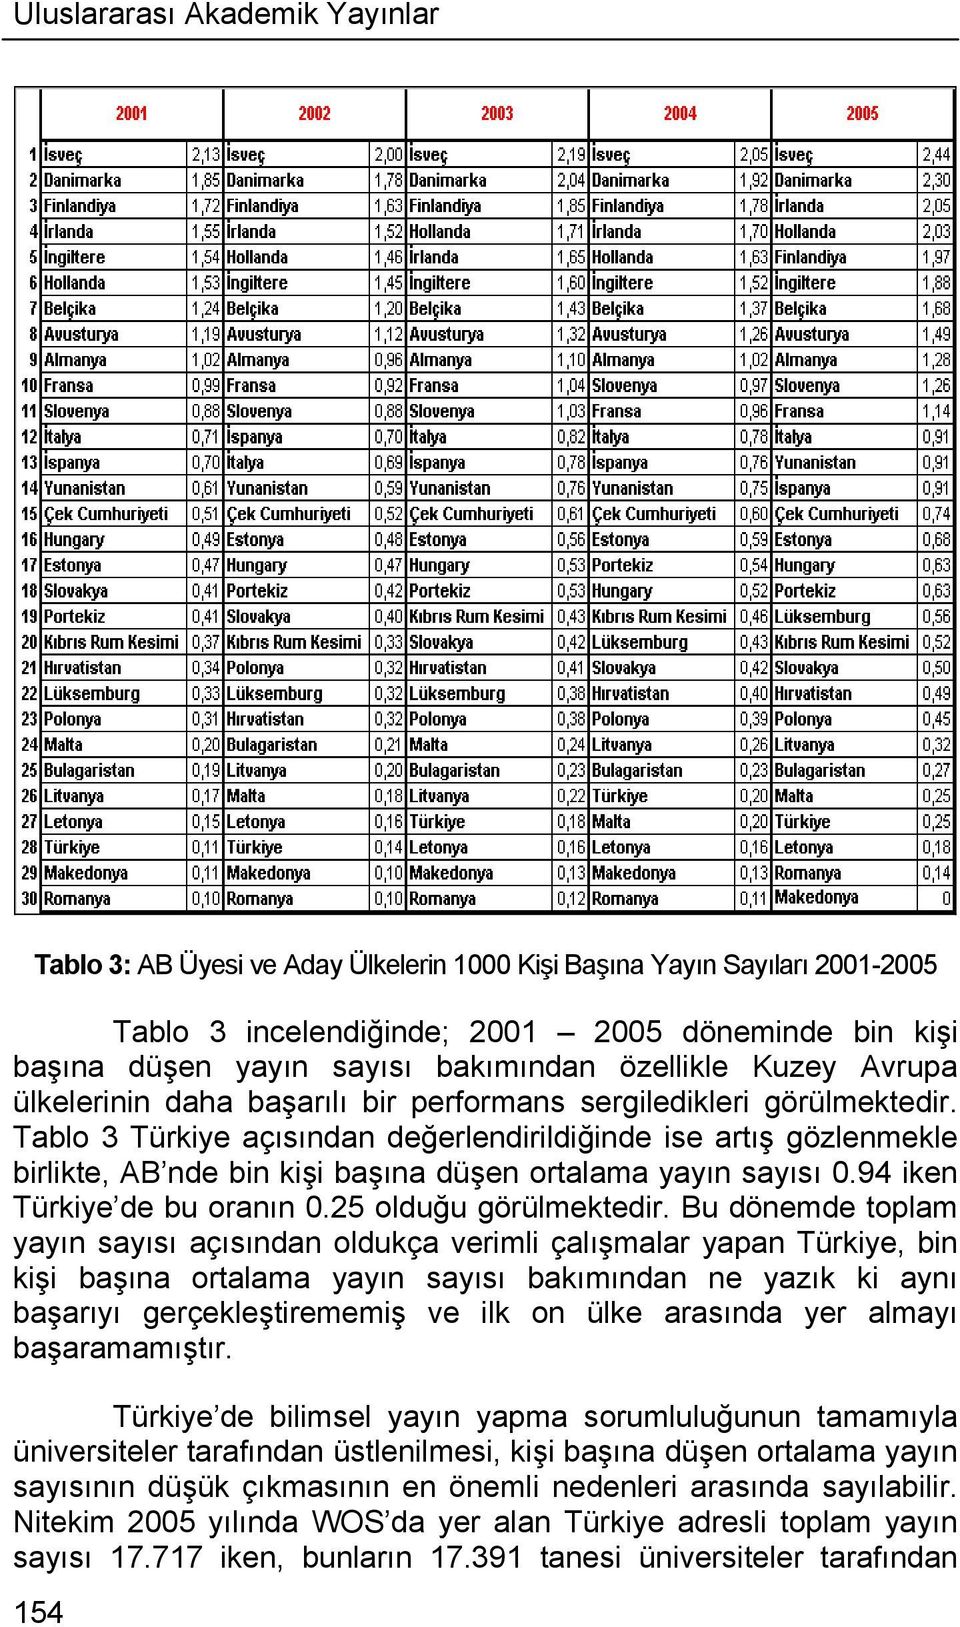 Tablo 3 Türkiye açısından değerlendirildiğinde ise artış gözlenmekle birlikte, AB nde bin kişi başına düşen ortalama yayın sayısı 0.94 iken Türkiye de bu oranın 0.25 olduğu görülmektedir.